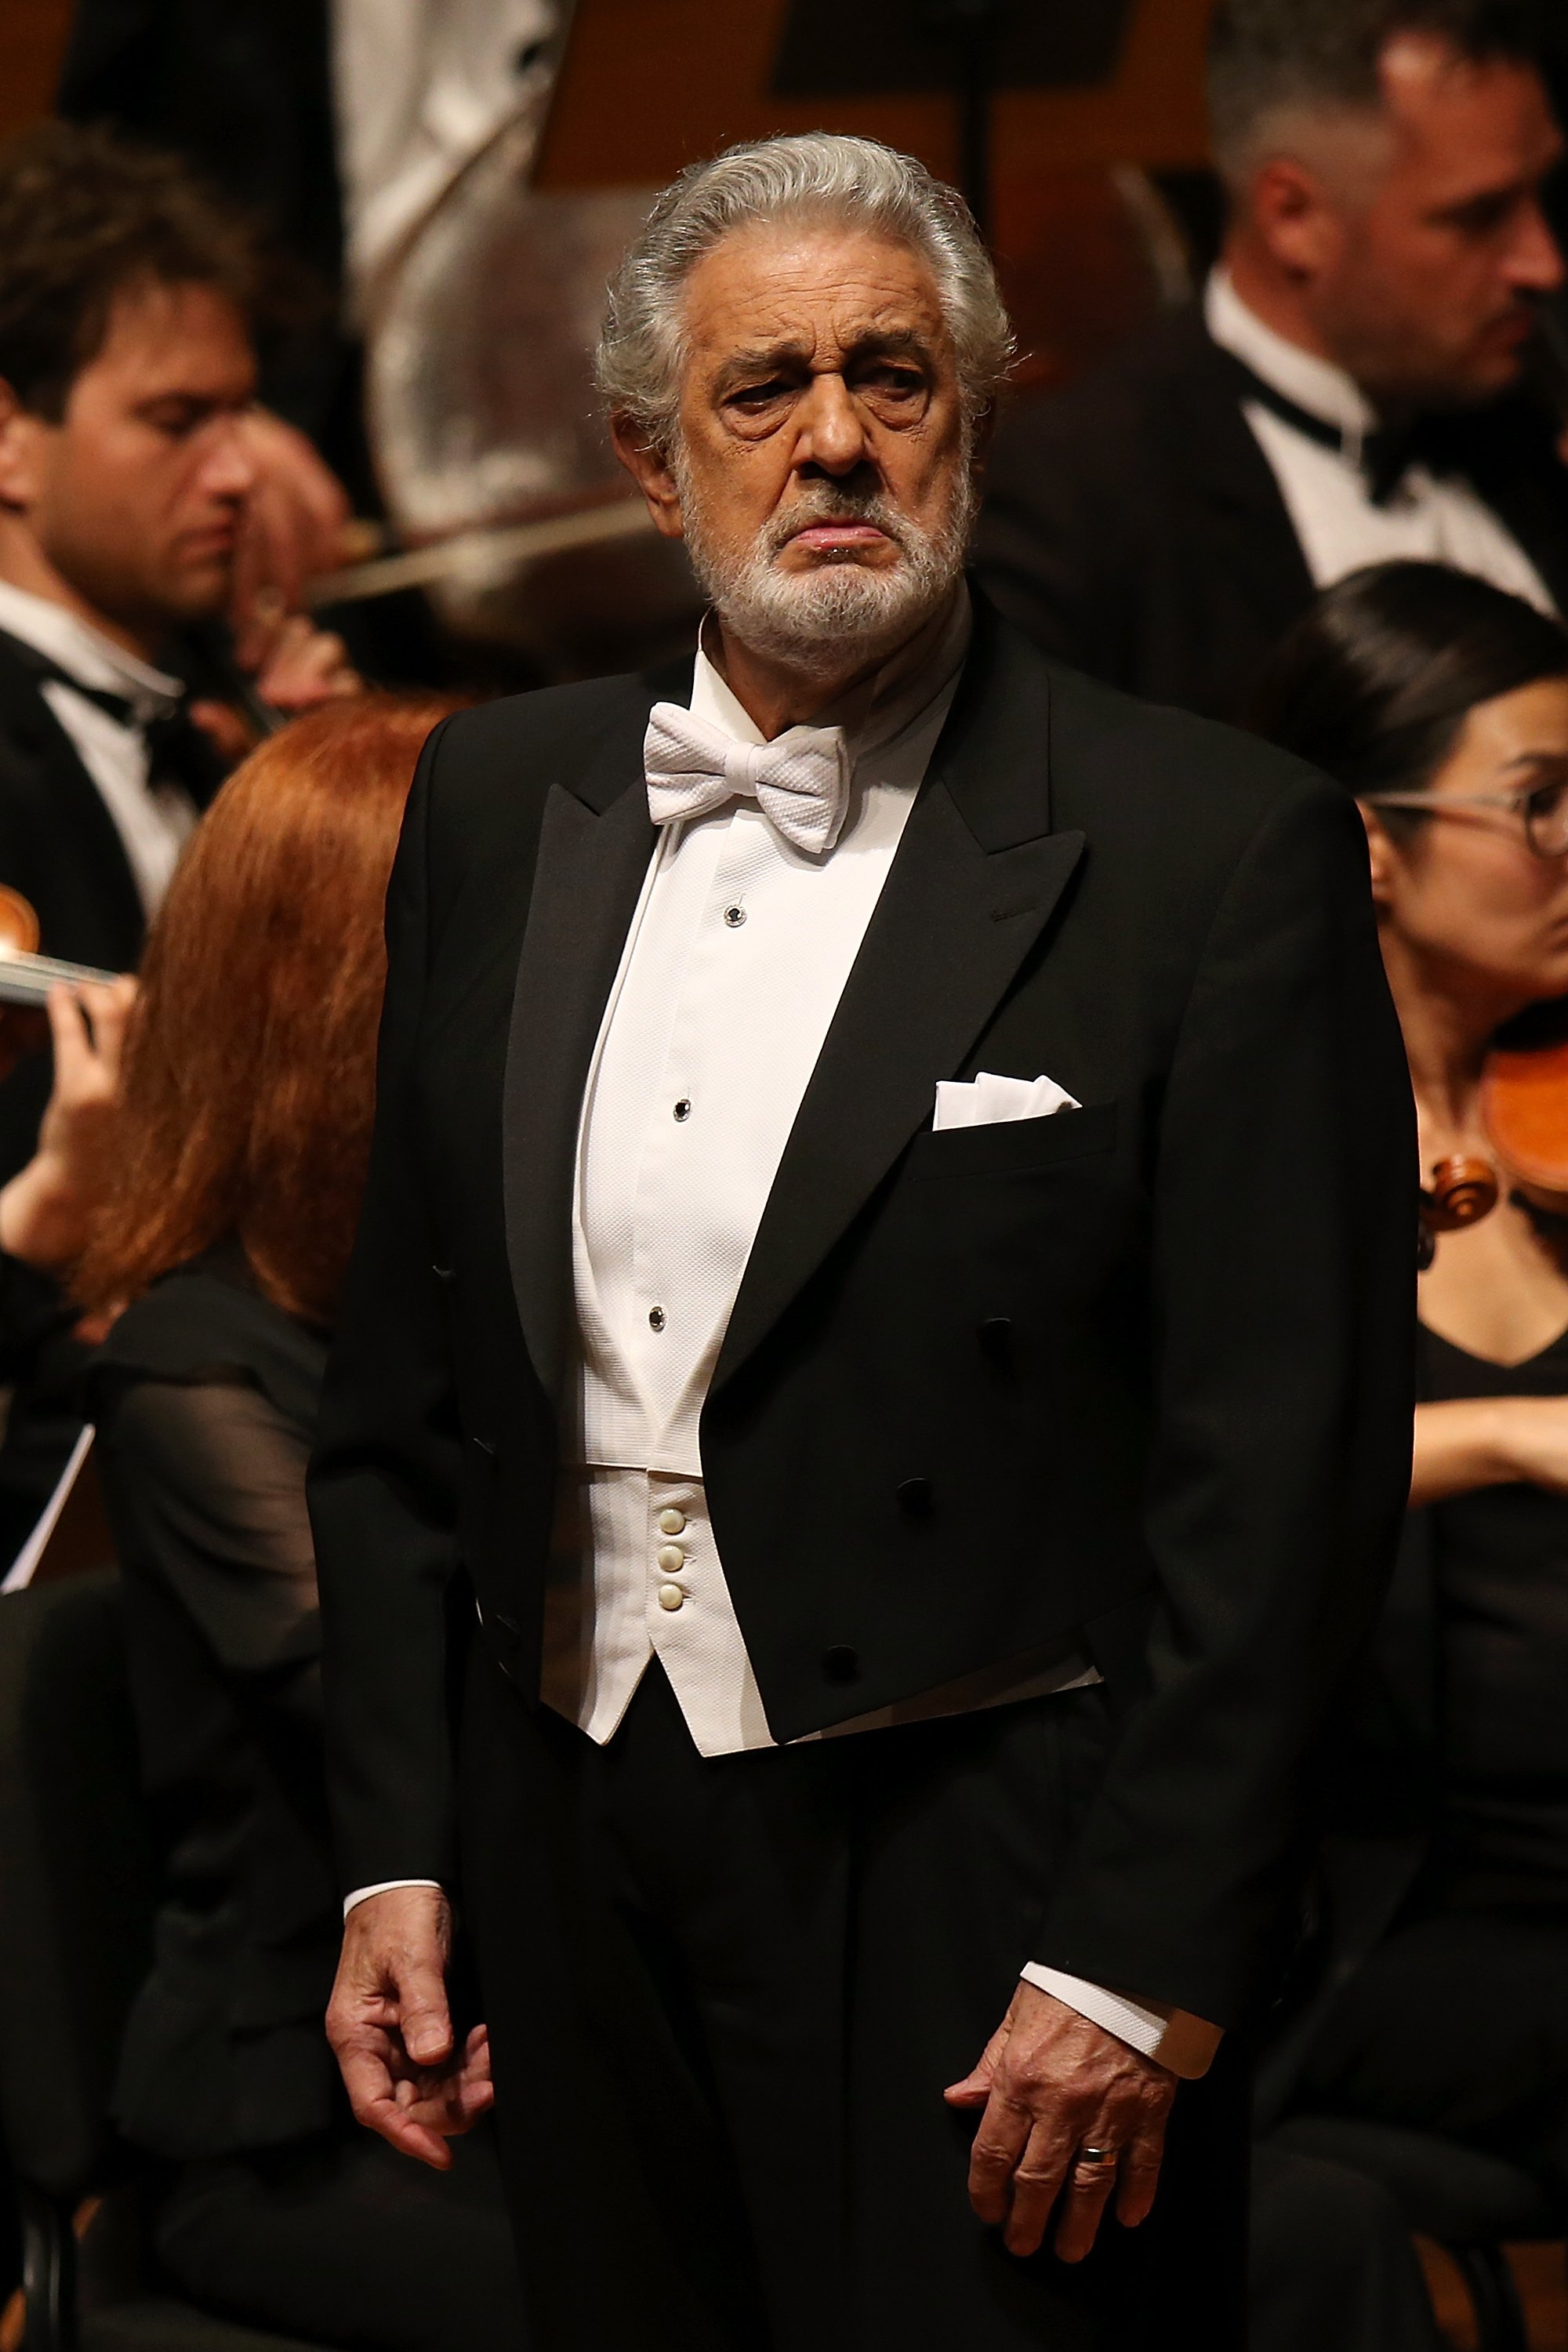 Placido Domingo sur scène pendant le concert Nabucco | Source : Getty Images 